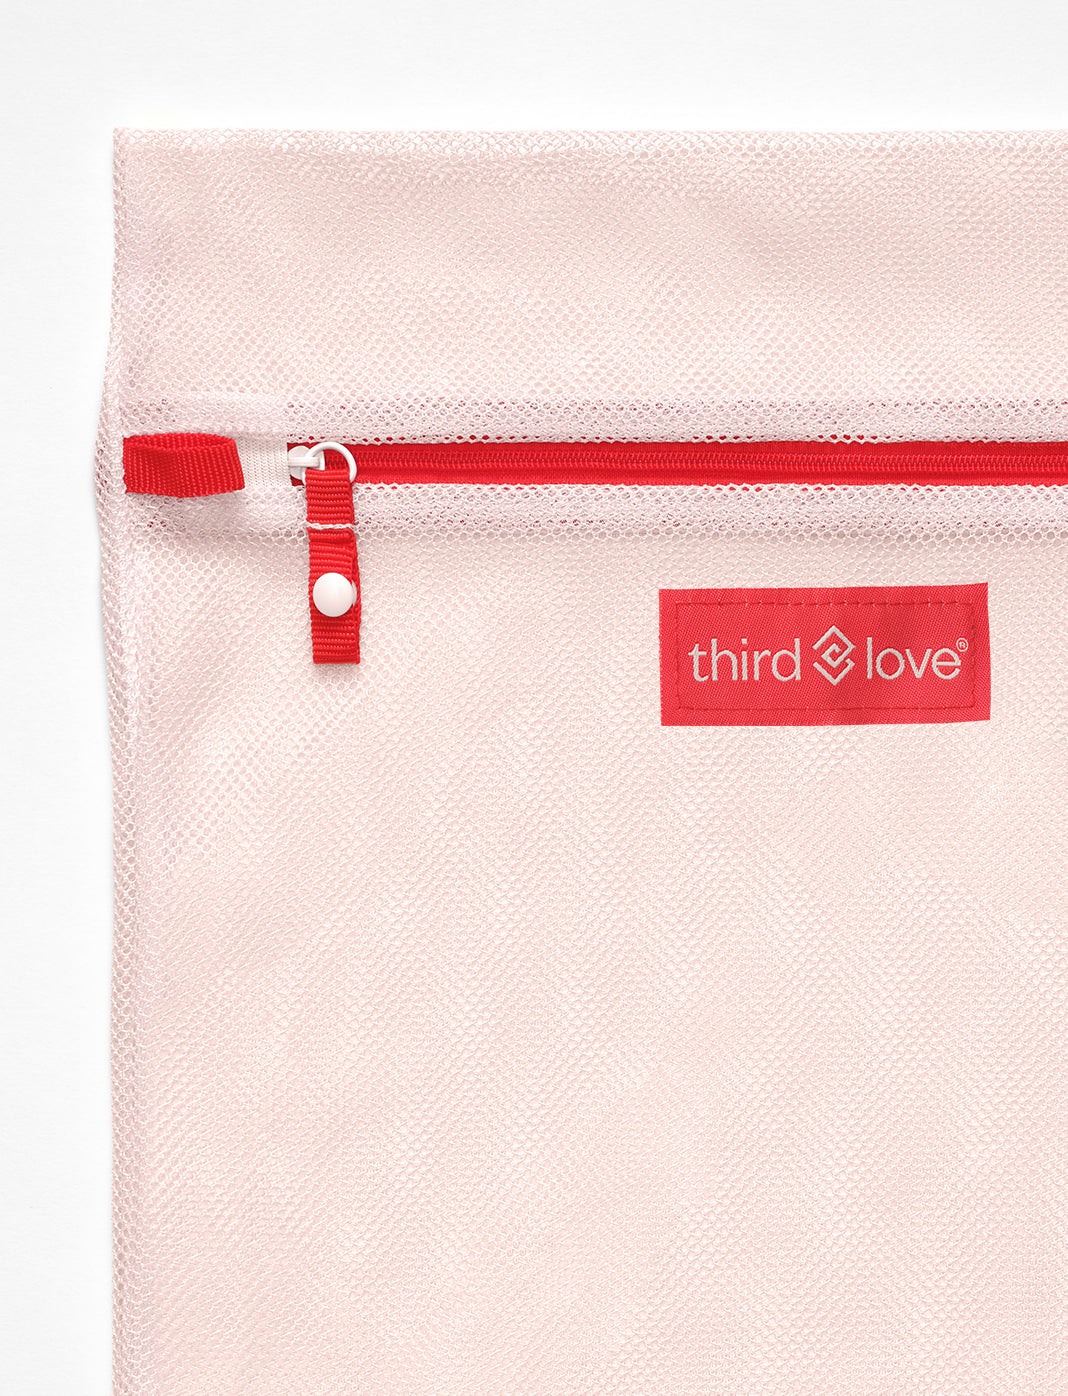 NEW Honeylove Honey Love Mesh Bras Intimates Zip-Up Laundry Bag